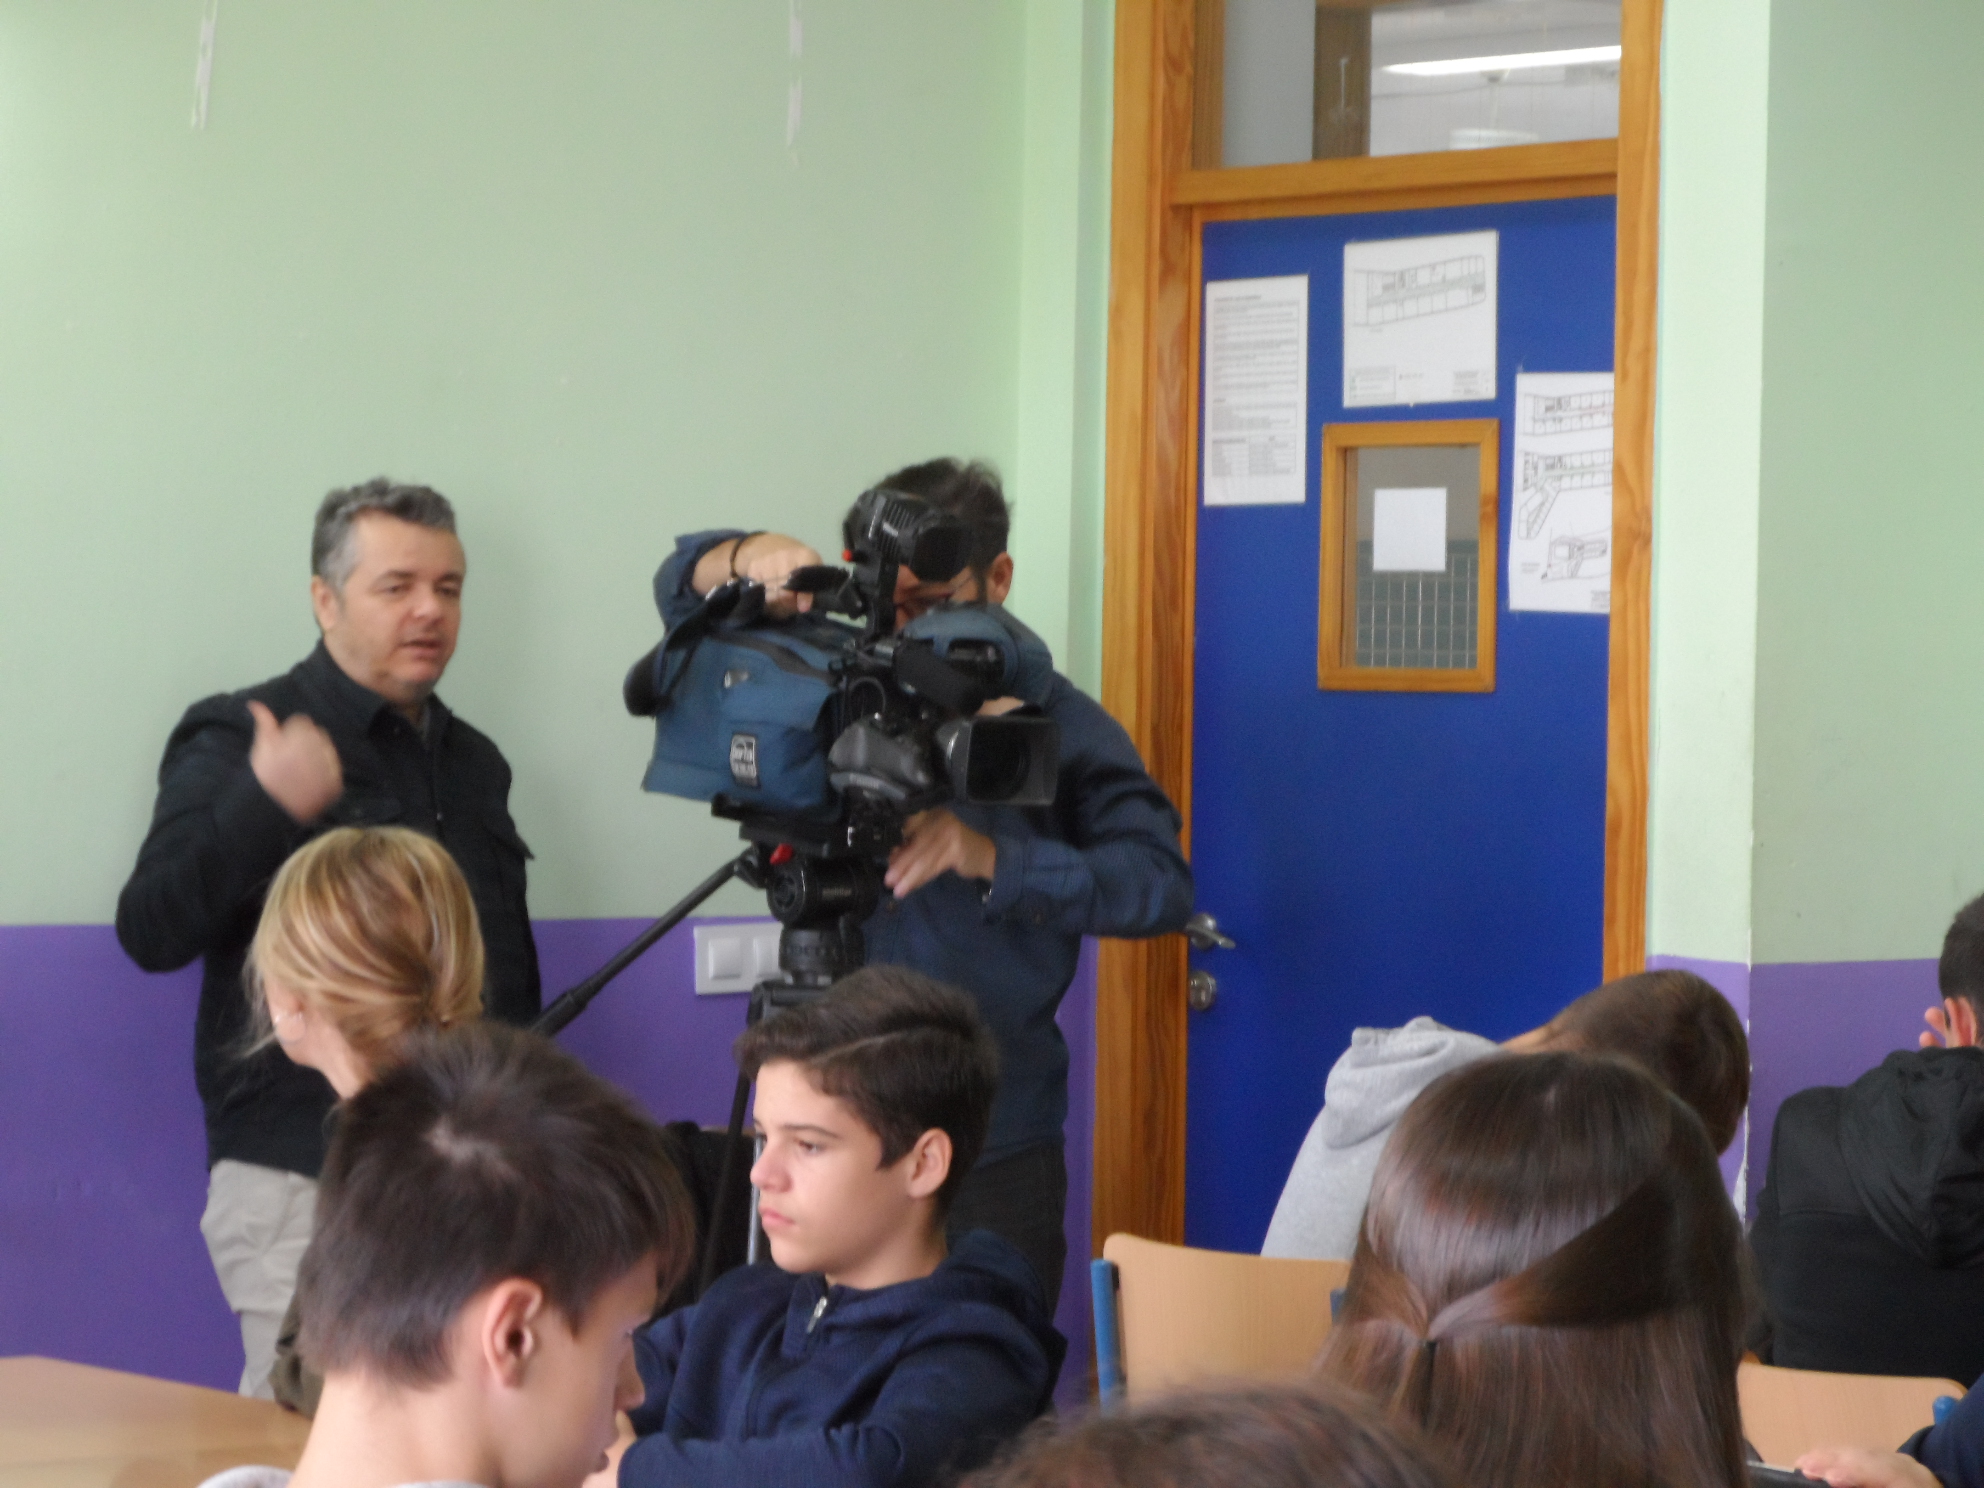 El IES ÍTACA colabora con el programa “Los Reporteros” para un reportaje sobre la Lengua Española